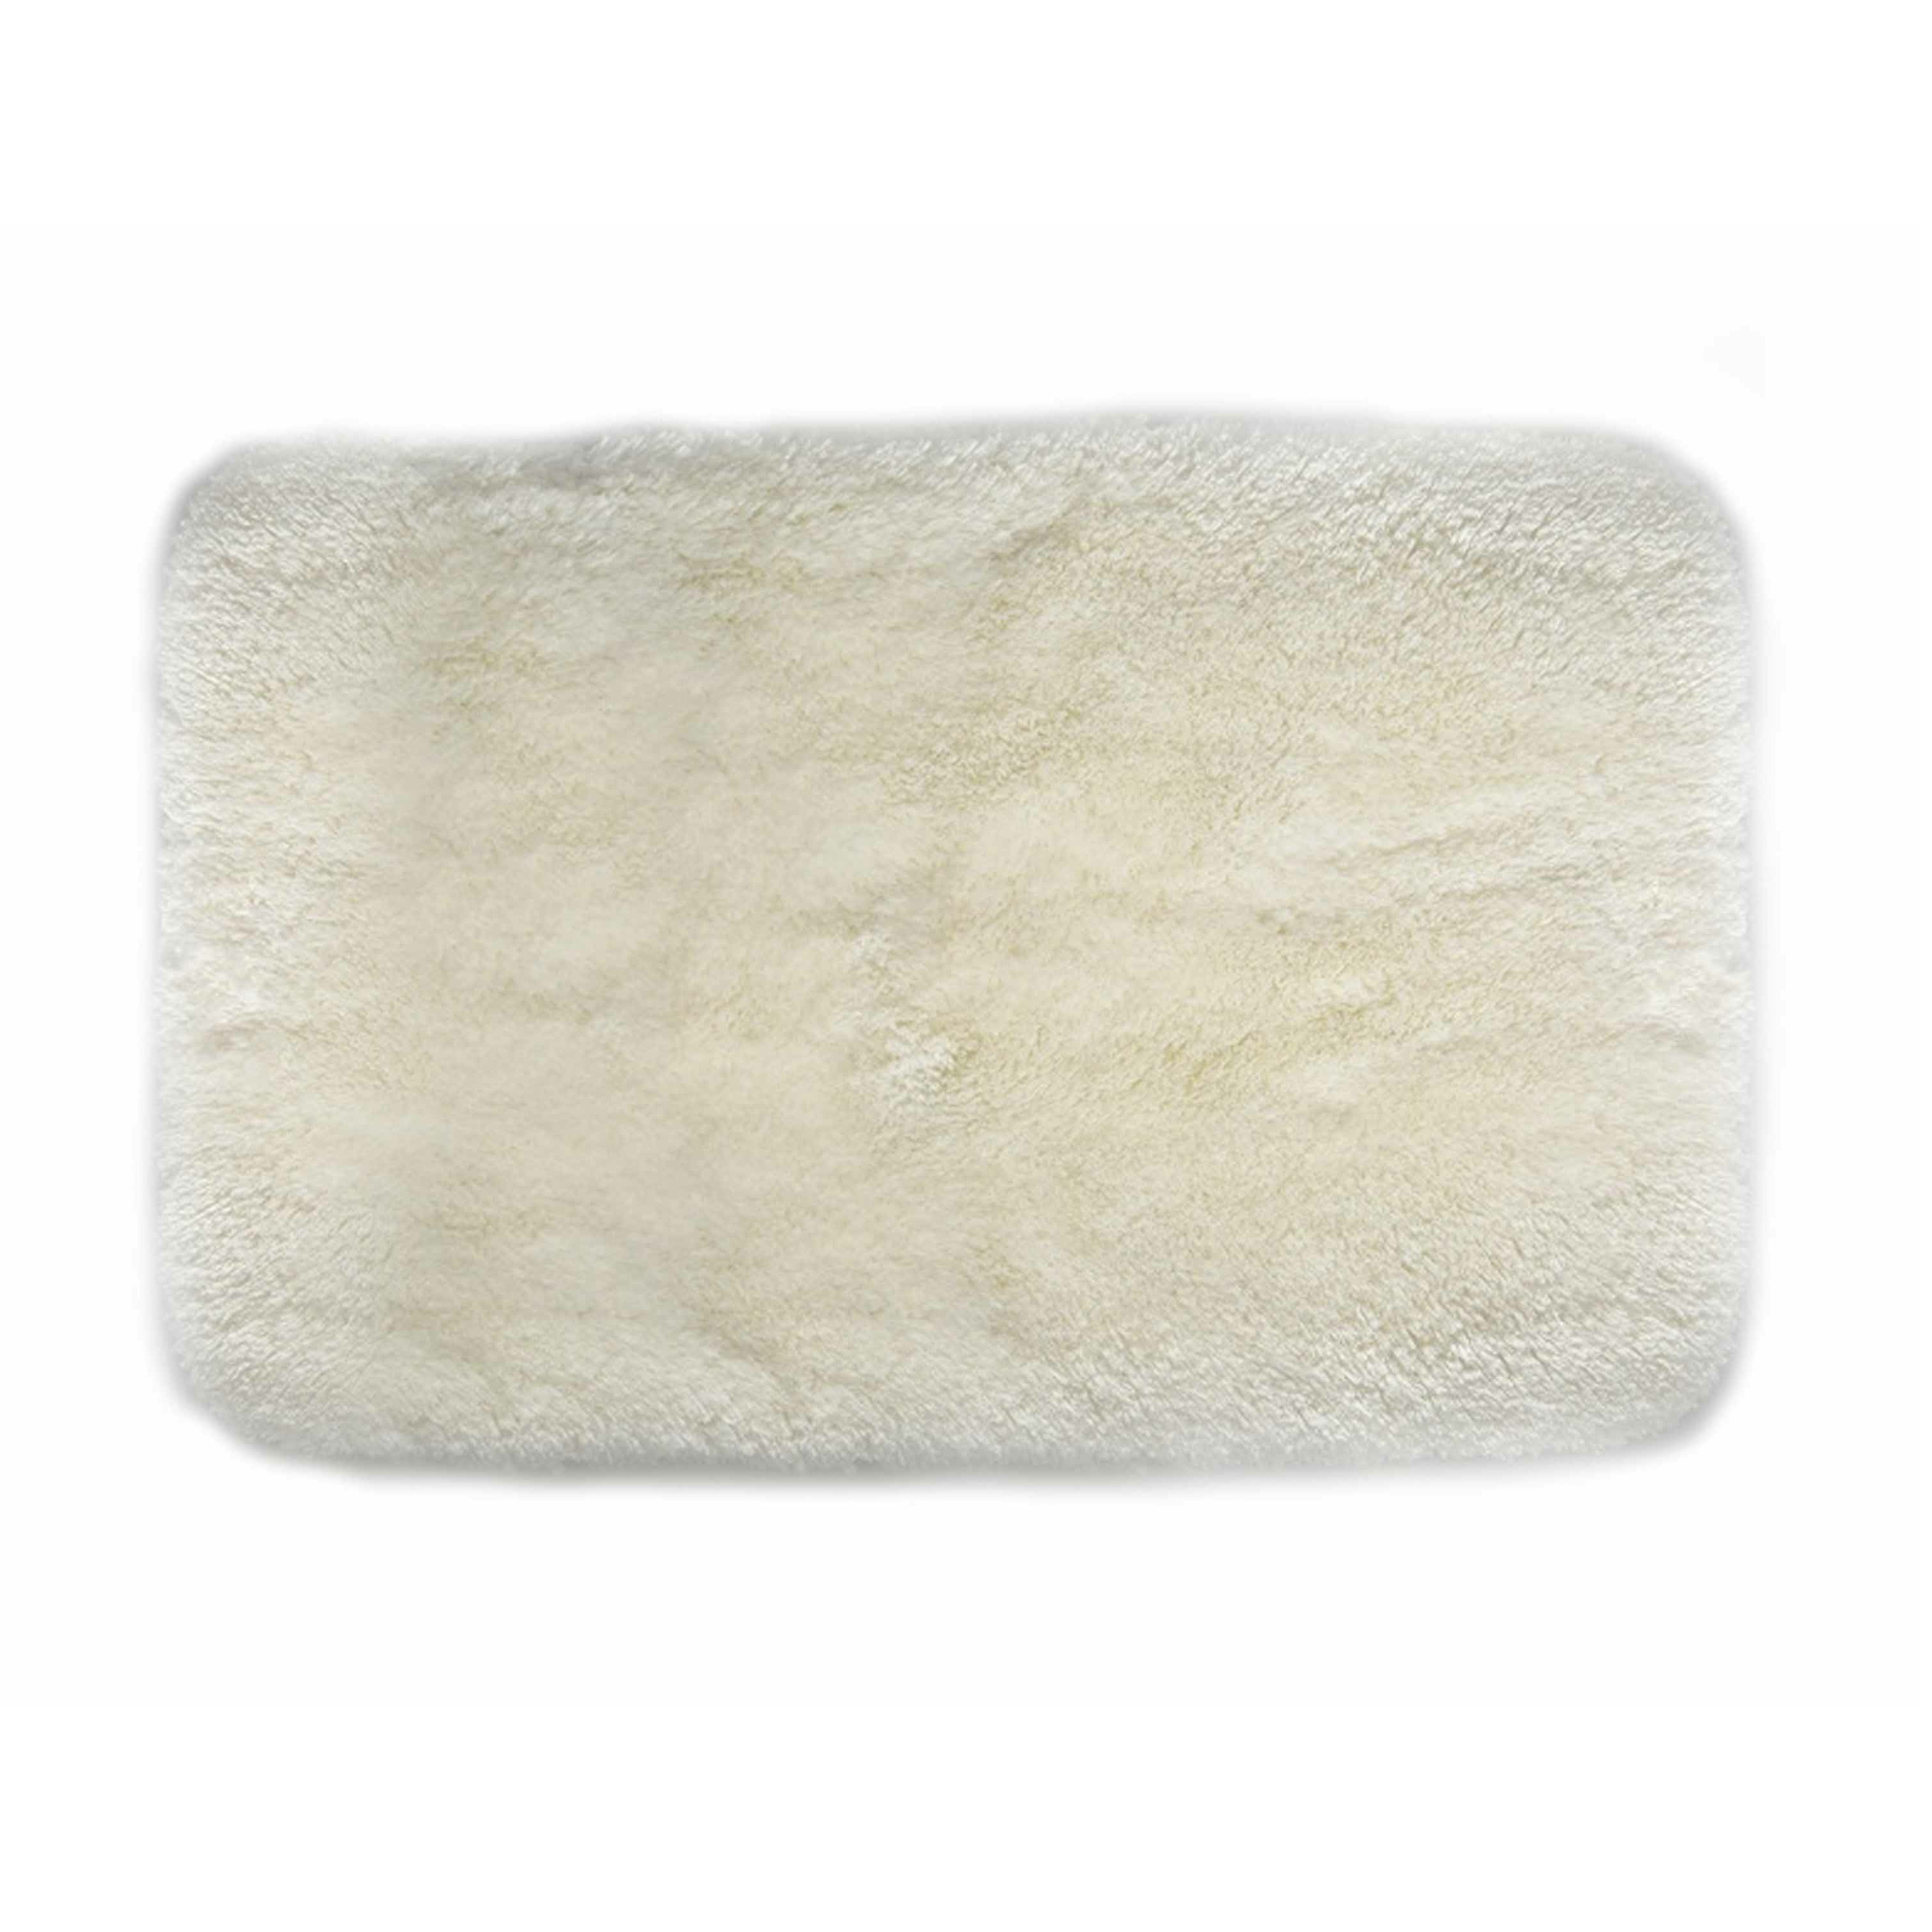 Spirella badkamer vloer kleedje-badmat tapijt hoogpolig en luxe uitvoering wit 40 x 60 cm